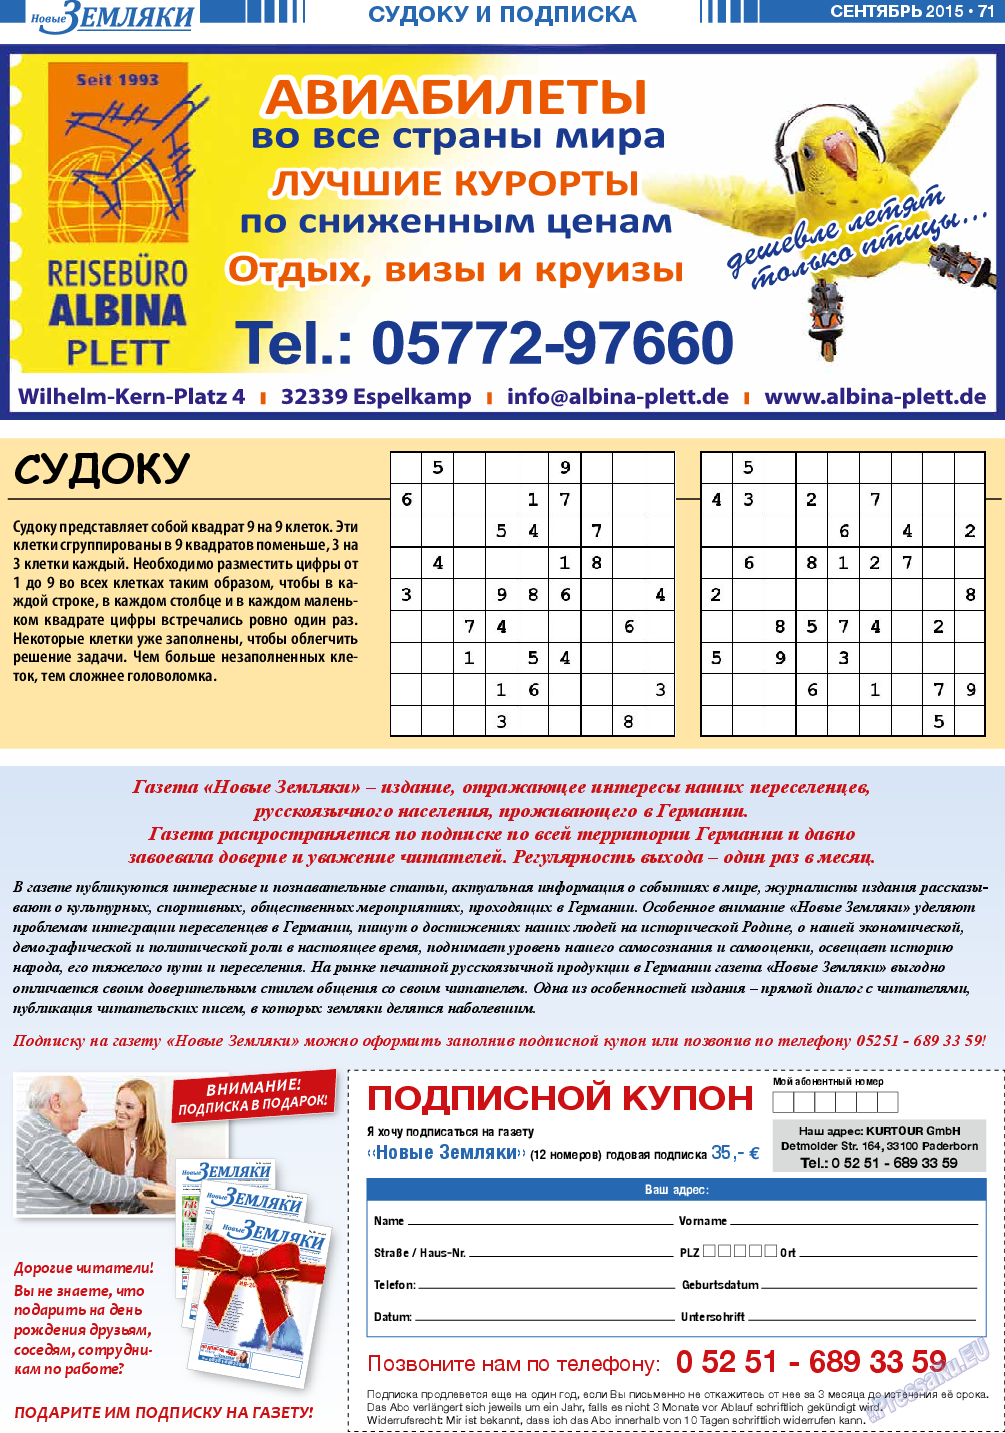 Новые Земляки, газета. 2015 №9 стр.71